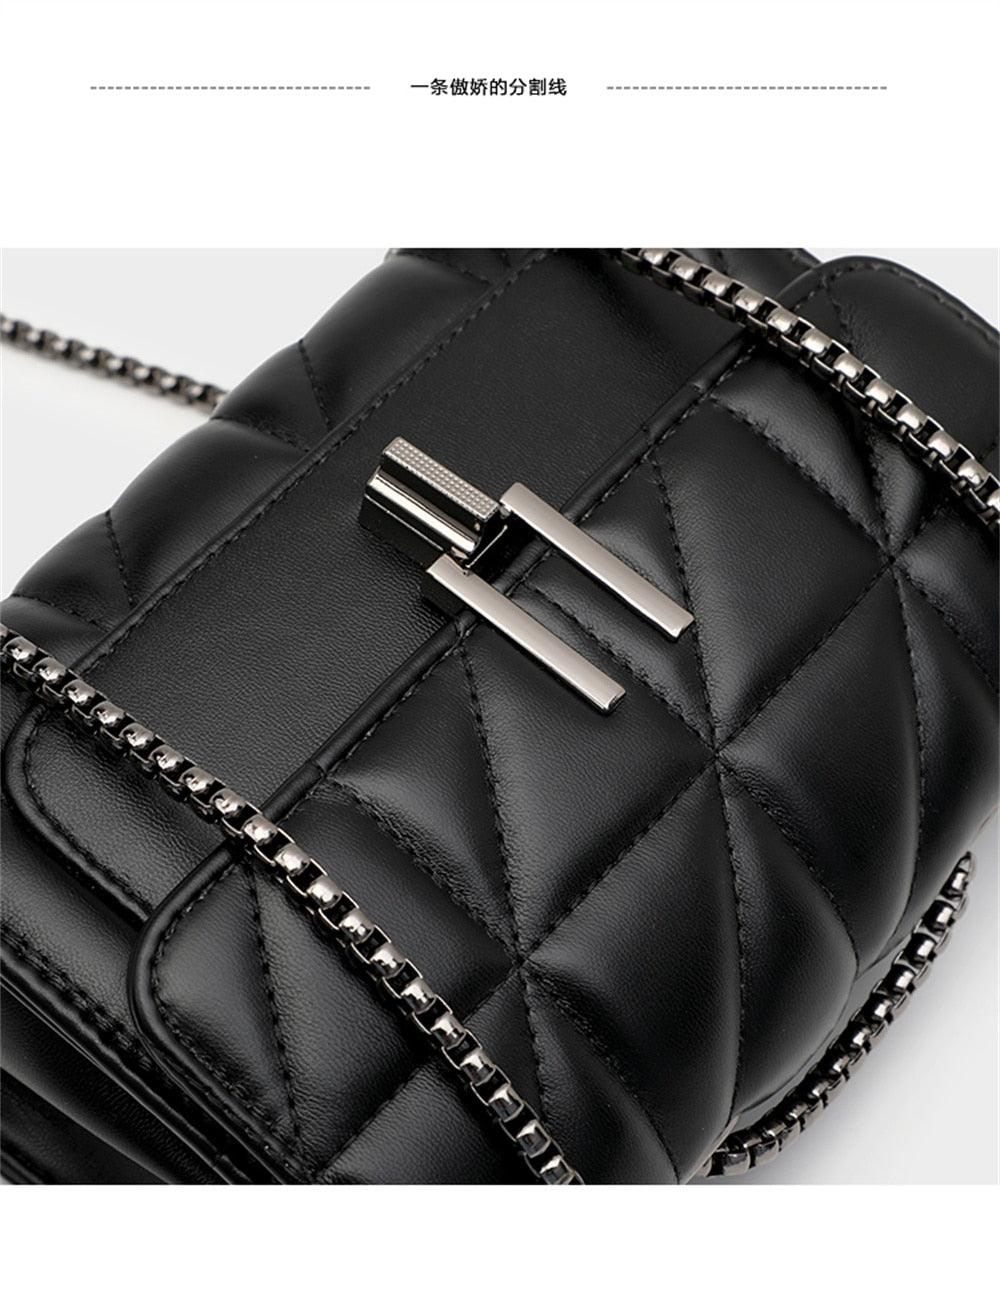 Trendy luxury handbag for women - Try Modest Limited 